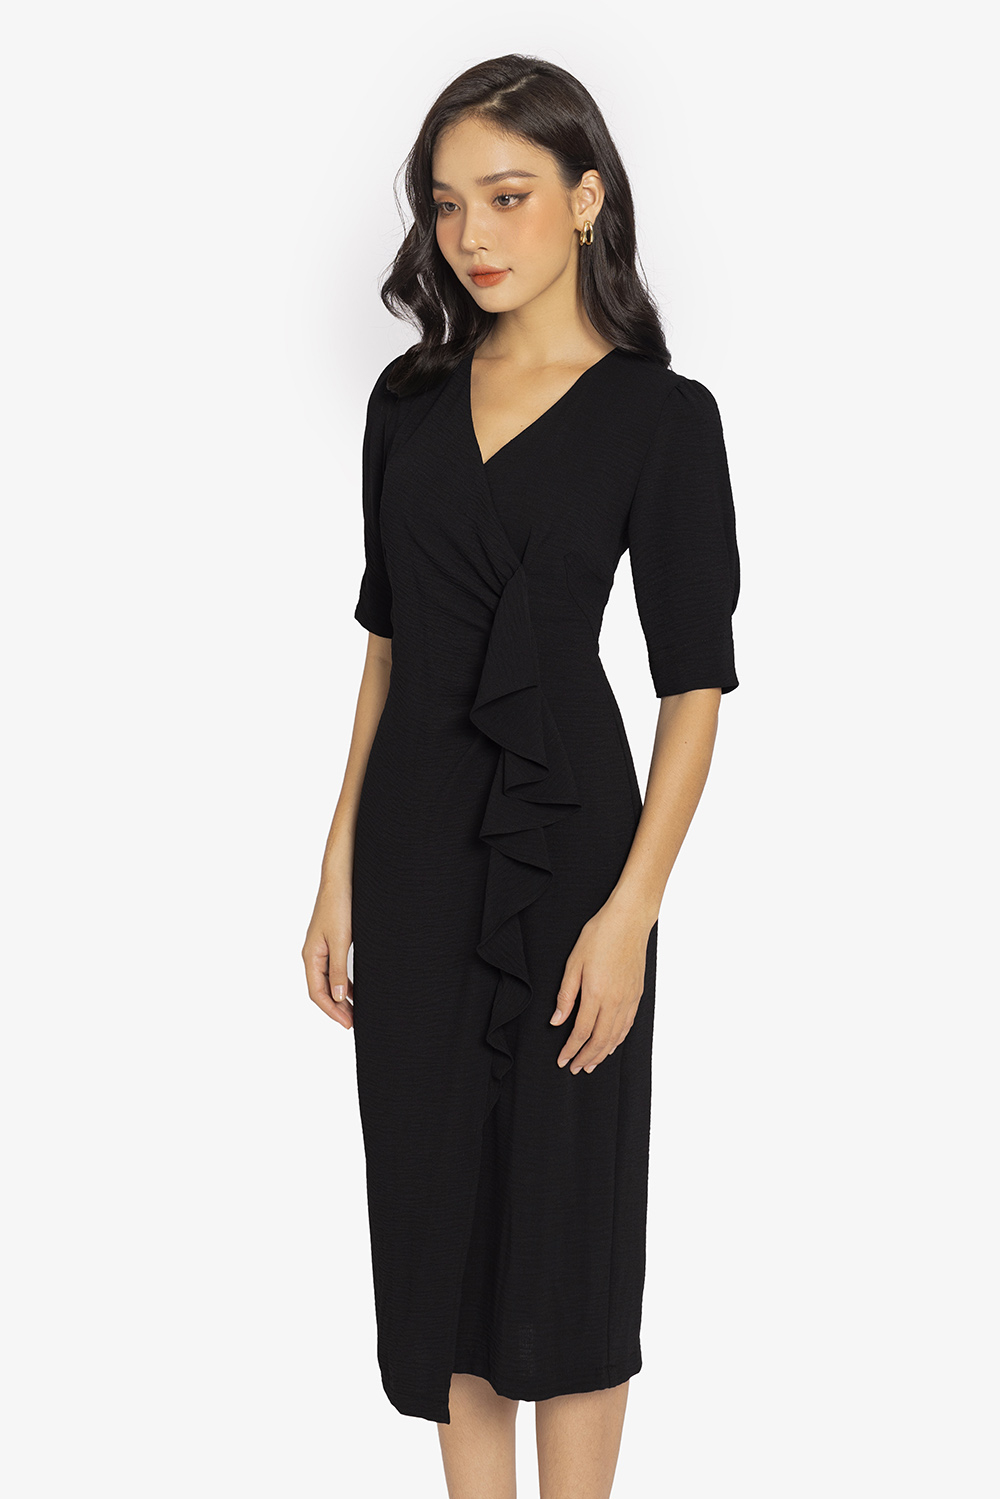 Đầm body 2 dây dáng dài Luala, váy ôm quai áo bảng to, chất liệu thun dày  dặn màu đen phong cách Hàn Quốc Freesize - Tìm Voucher